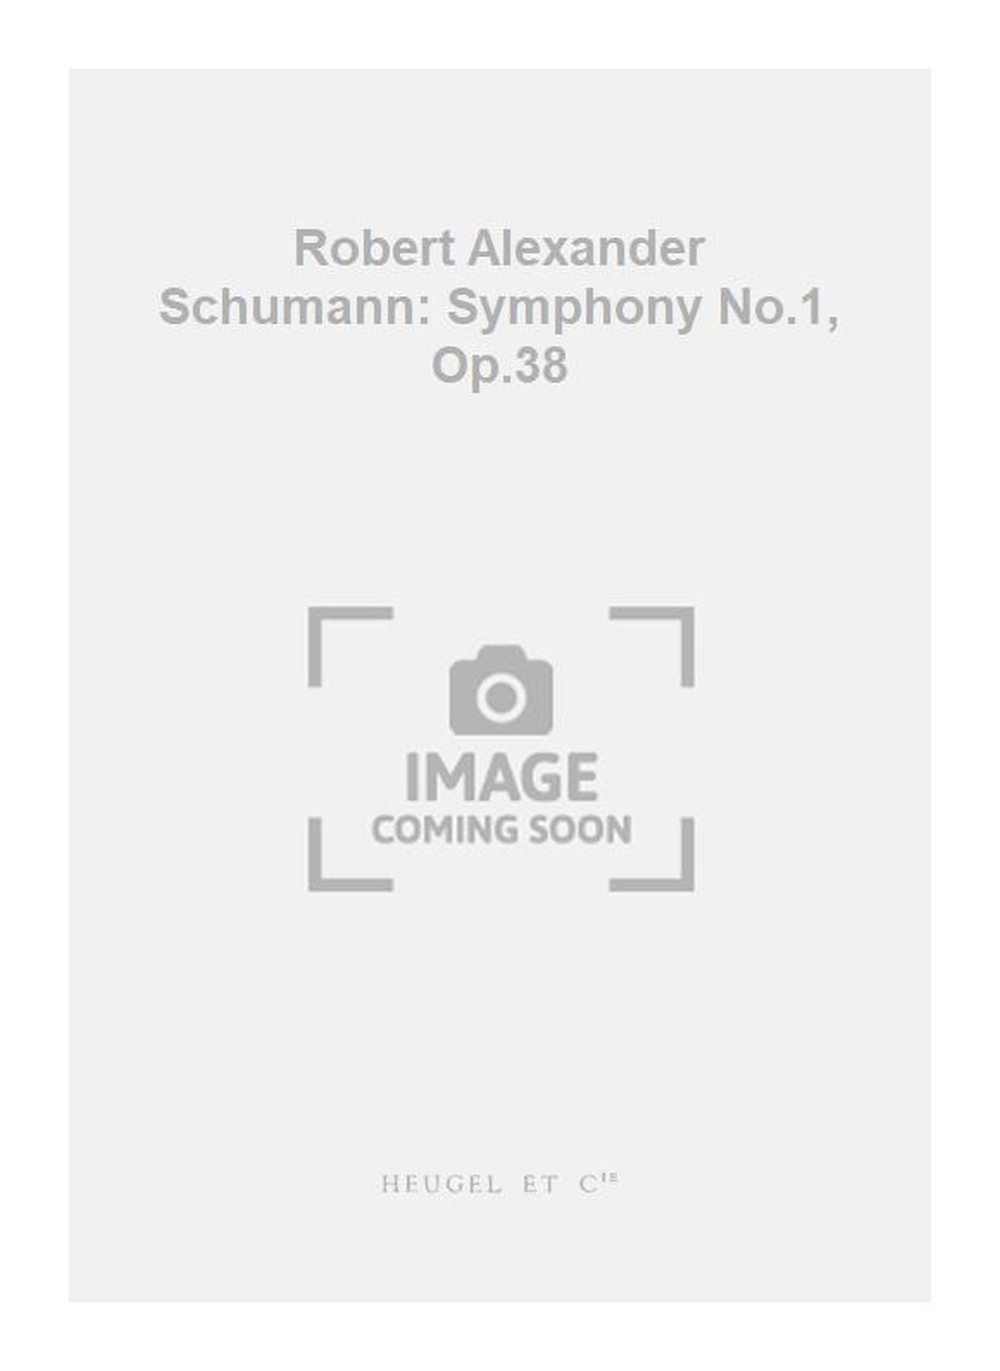 Robert Schumann: Robert Alexander Schumann: Symphony No.1  Op.38